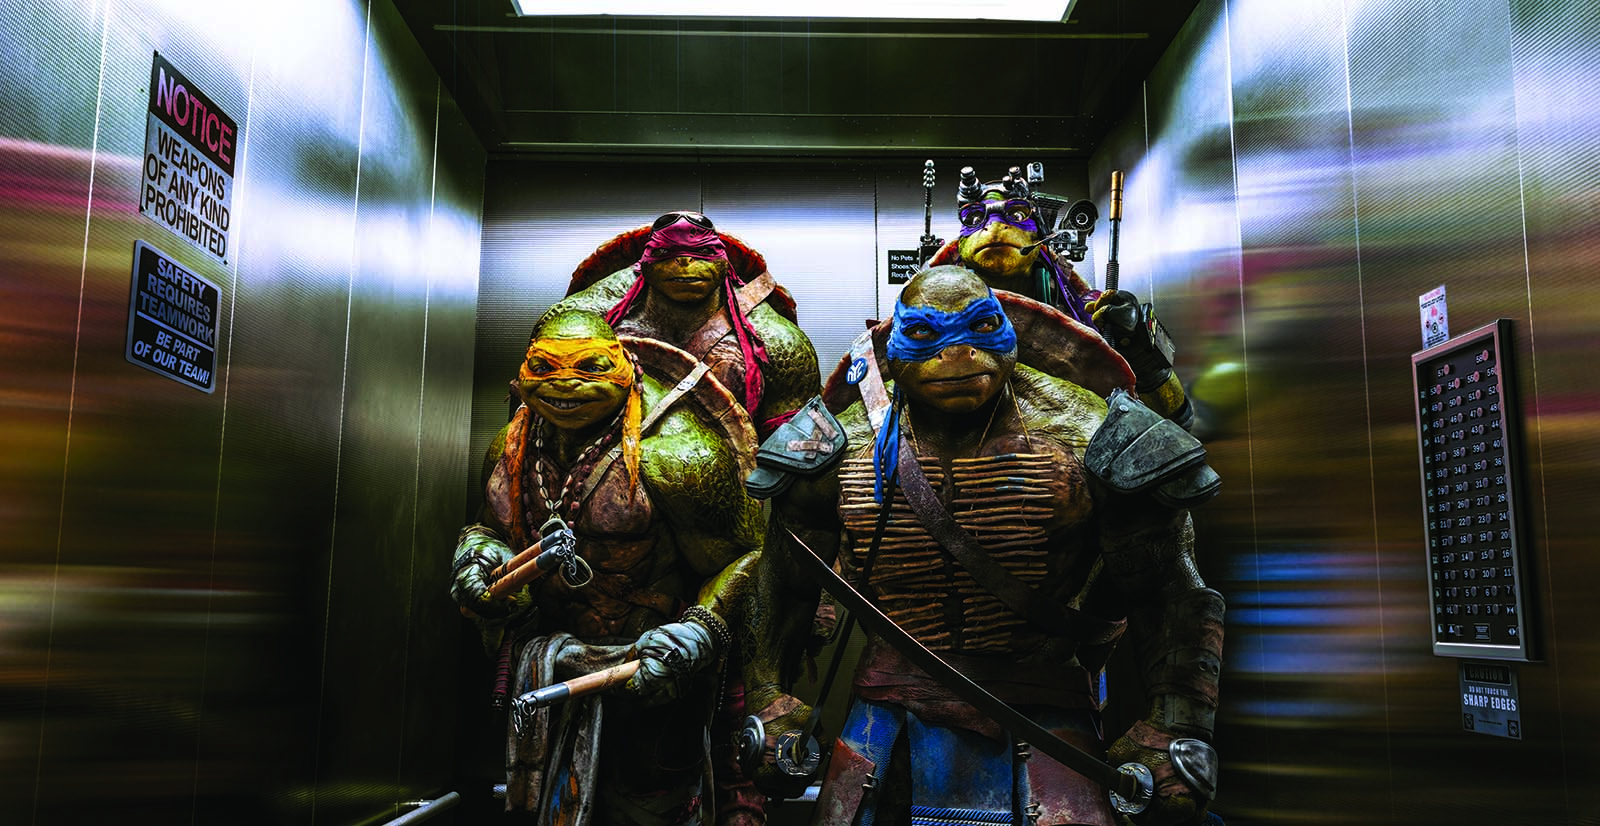 Foto zum Film Teenage Mutant Ninja Turtles Bild 39 auf 69 FILMSTARTS.de